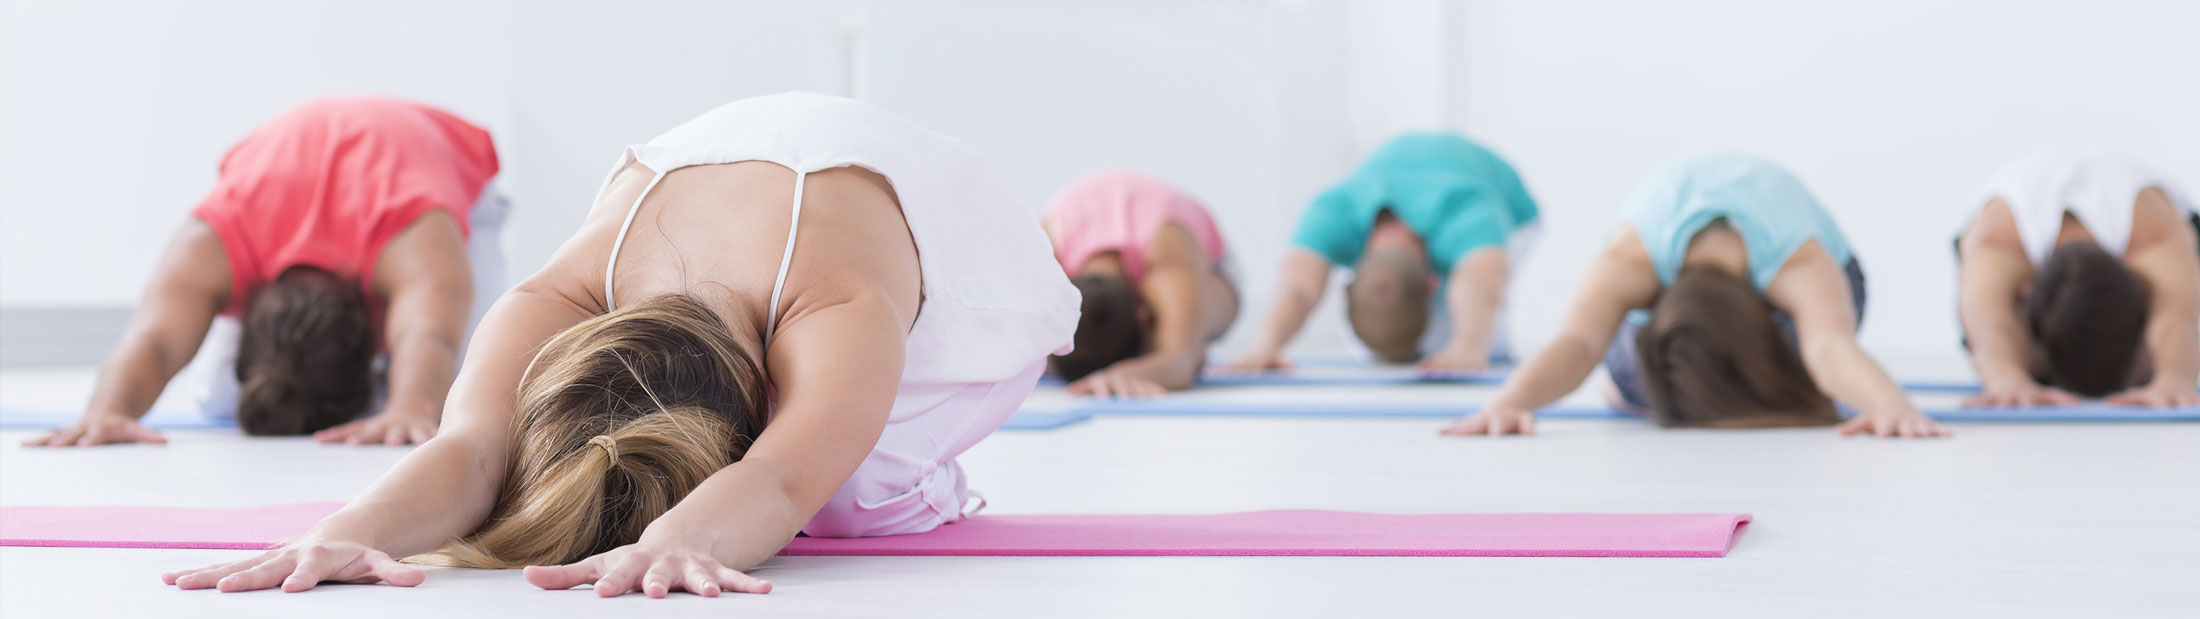 Yoga Poses to Help Relieve Arthritis